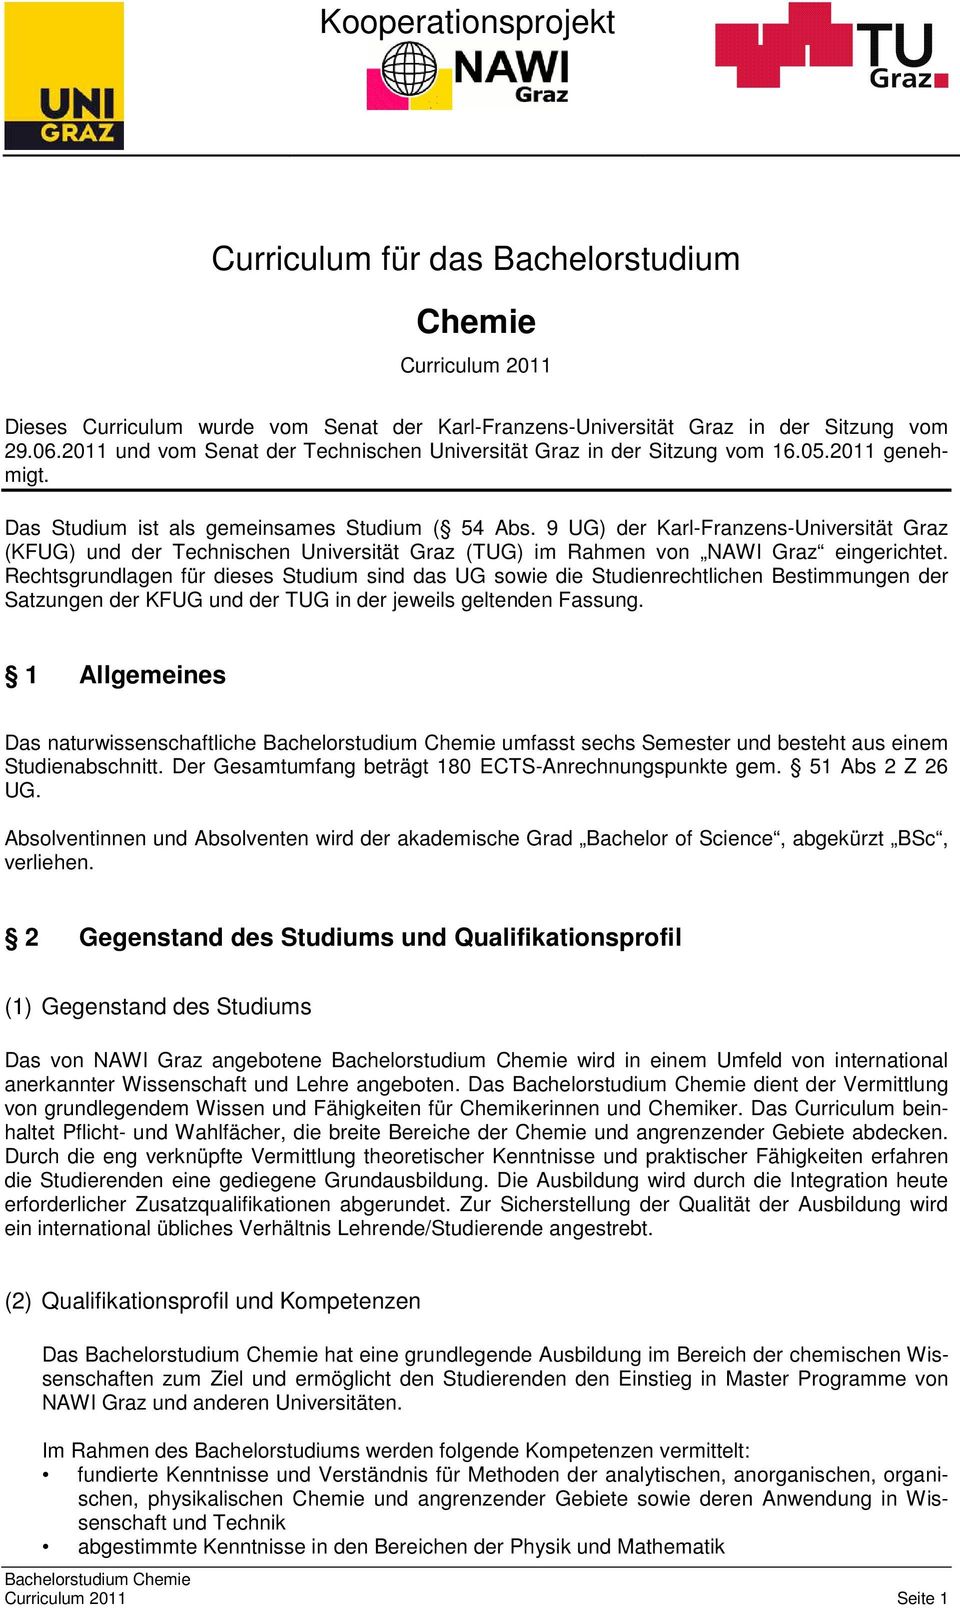 9 UG) der Karl-Franzens-Universität Graz (KFUG) und der Technischen Universität Graz (TUG) im Rahmen von NAWI Graz eingerichtet.